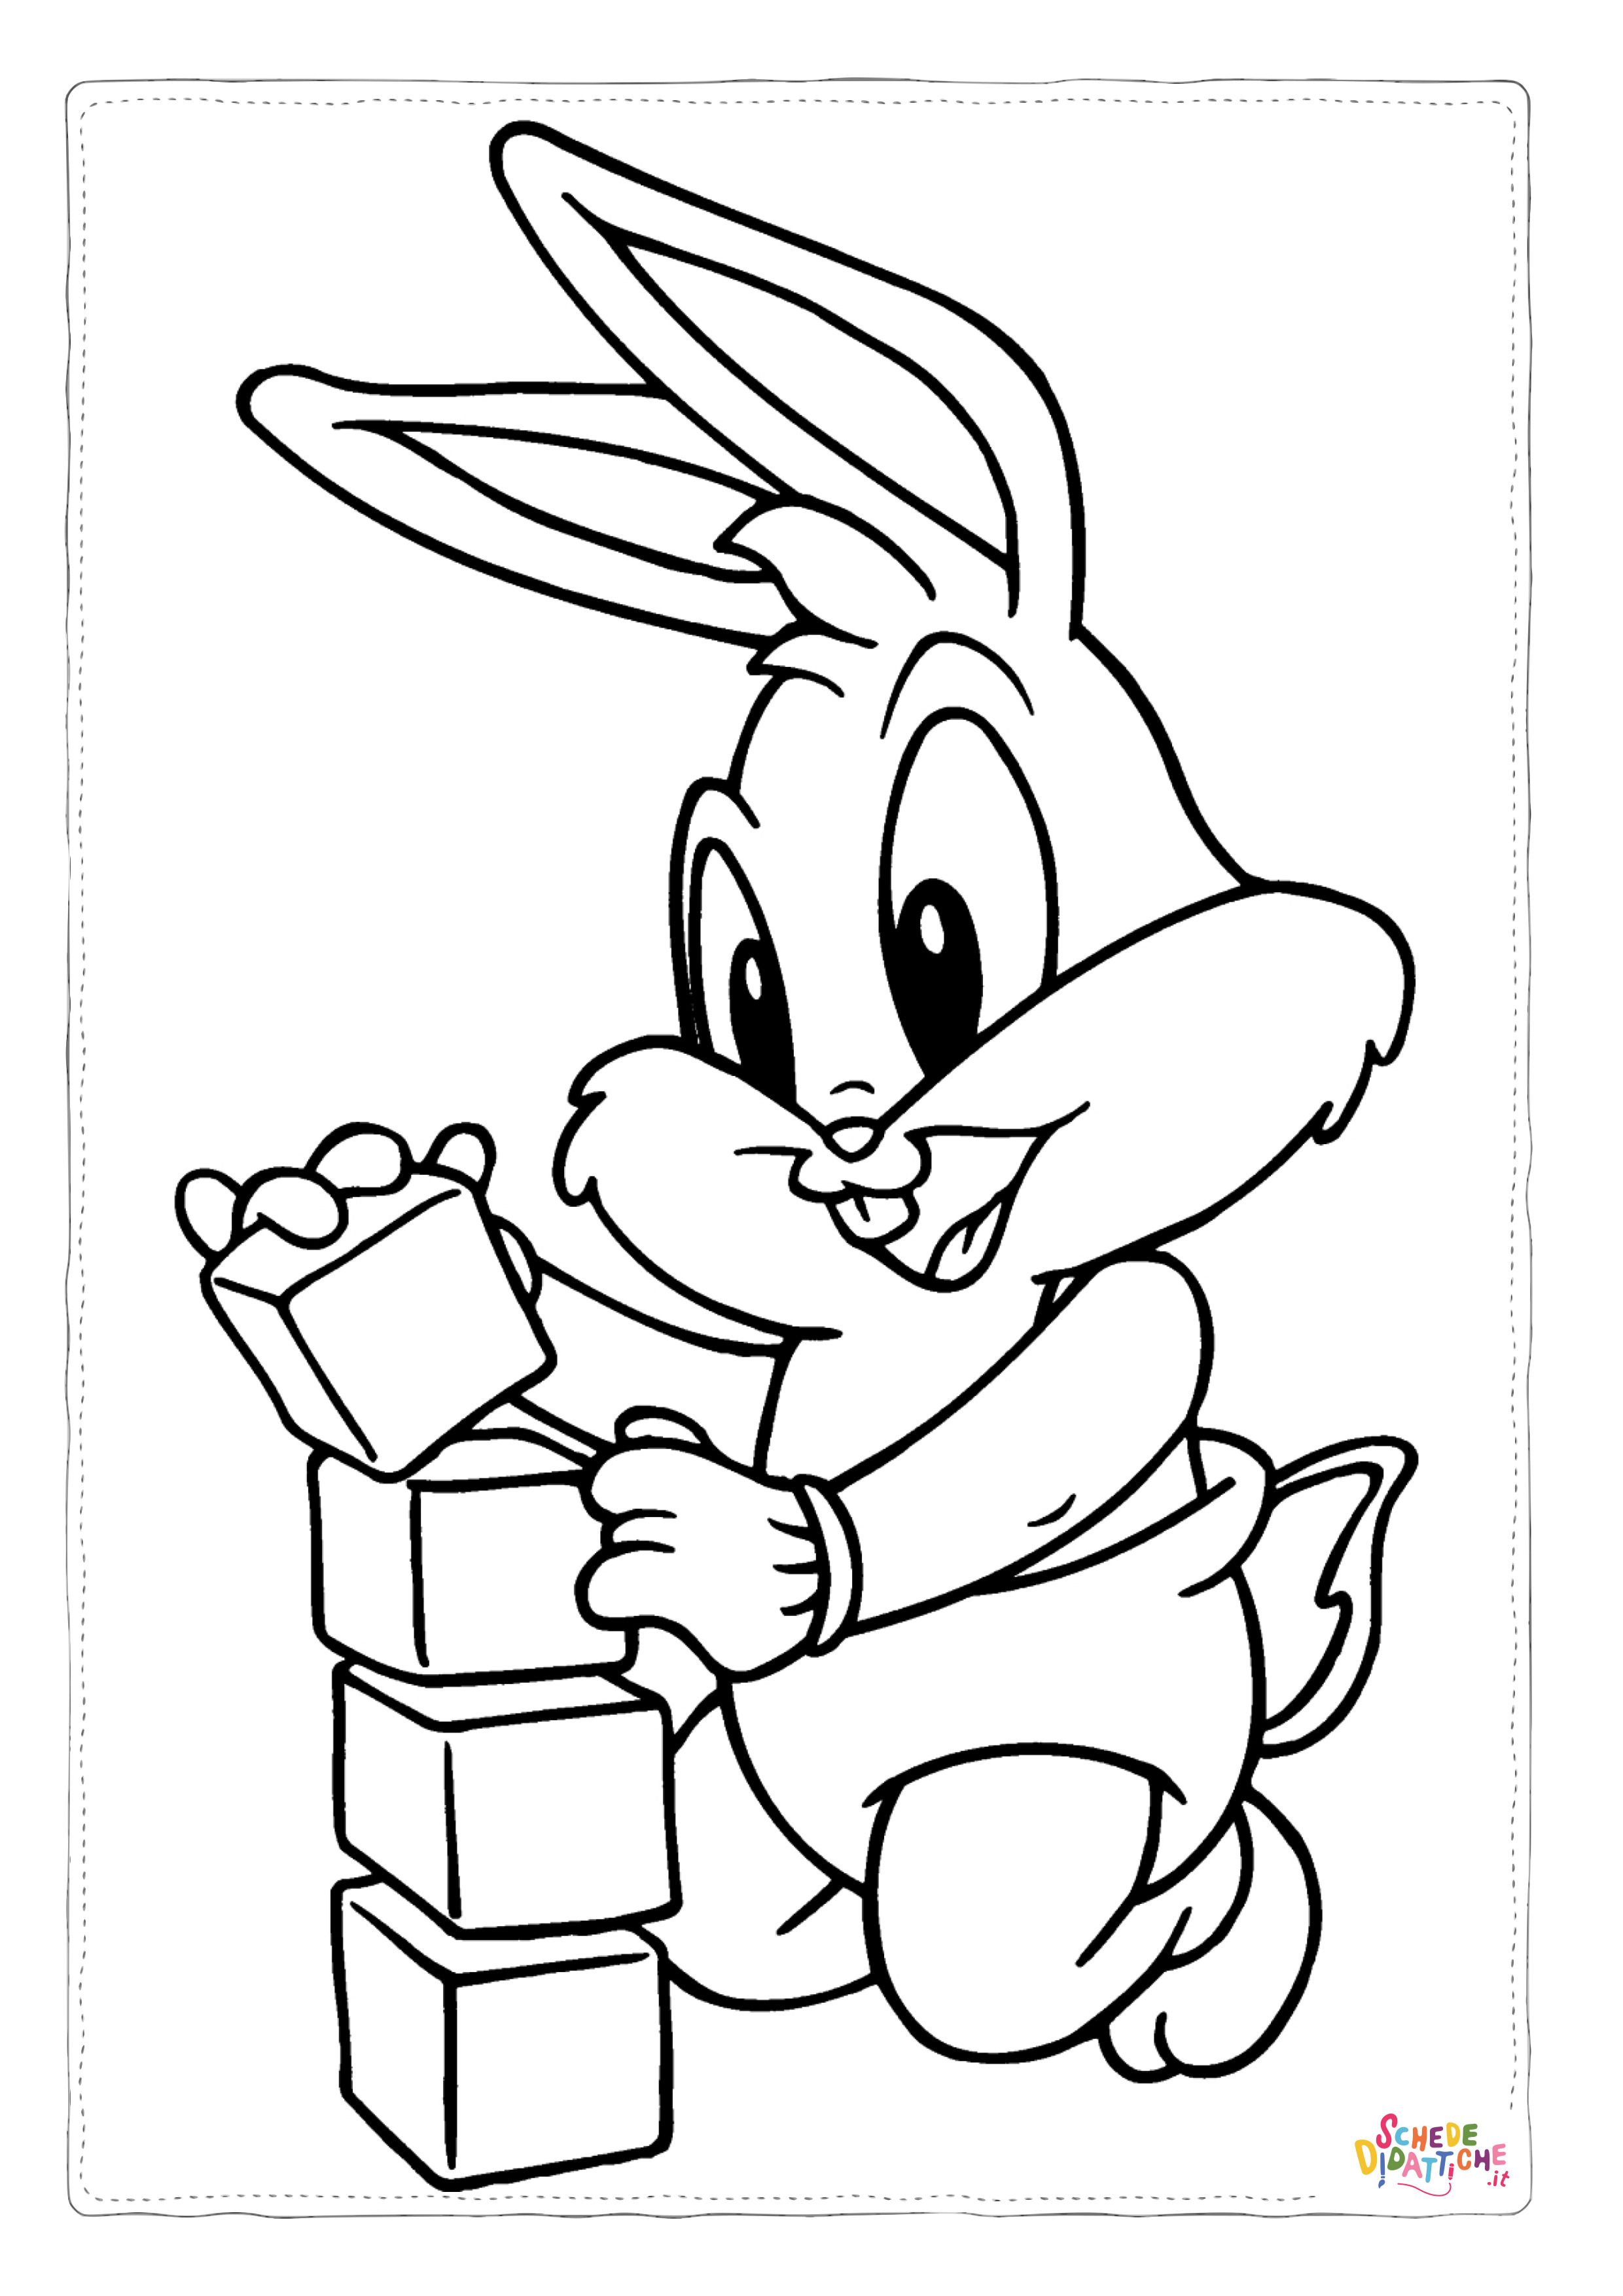 Disegno di Bugs Bunny da stampare e colorare 12